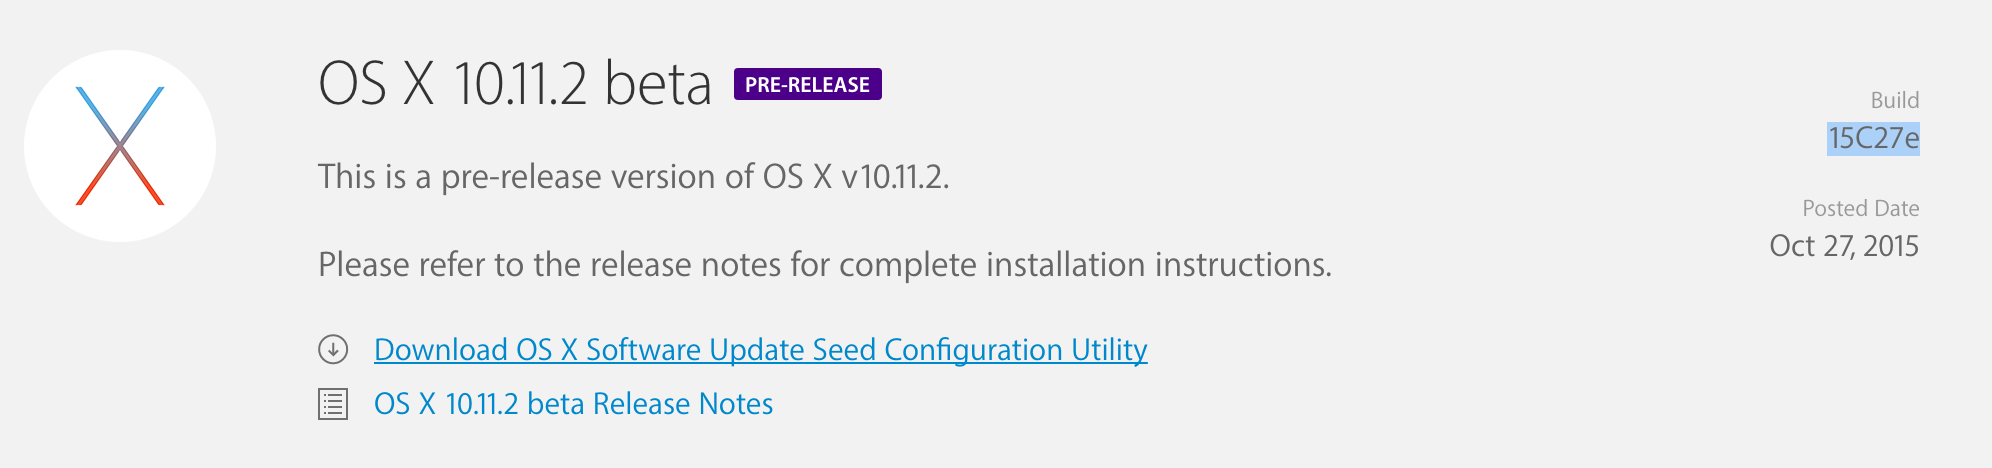 OS X 10.11.2 beta